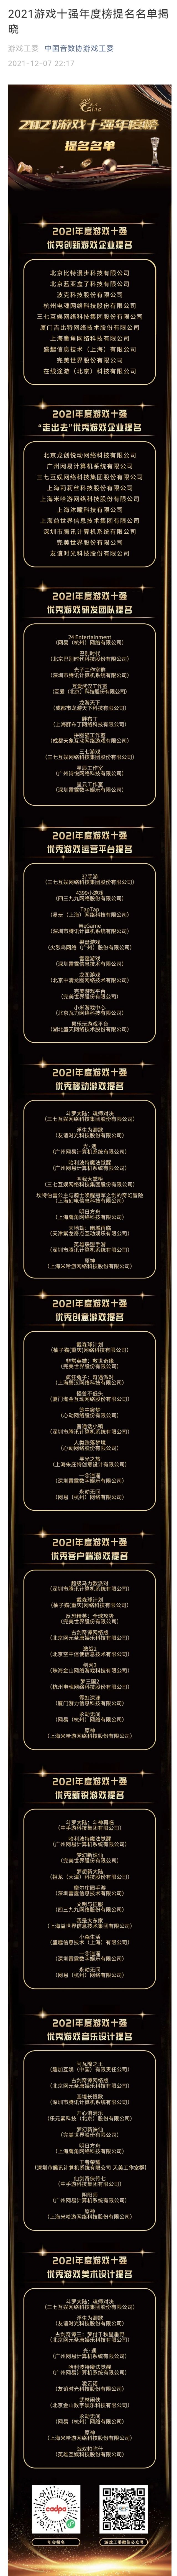 【遊戲綜合】遊訊：中國遊戲工委公佈《2021遊戲十強年度榜提名名單》